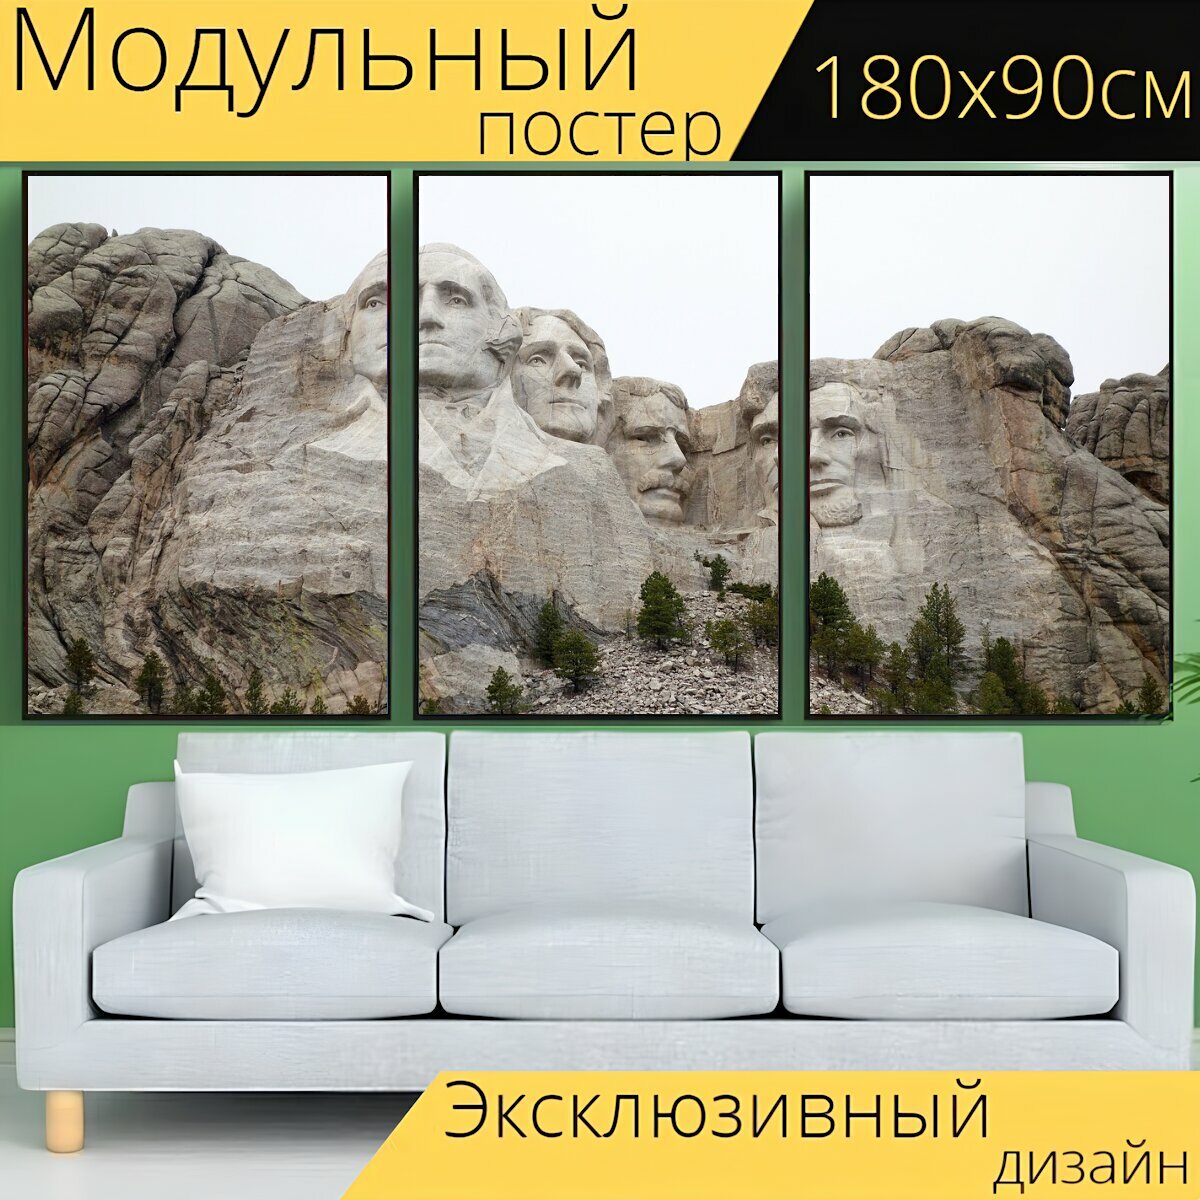 Модульный постер "Рашмор, президенты, гора рашмор" 180 x 90 см. для интерьера